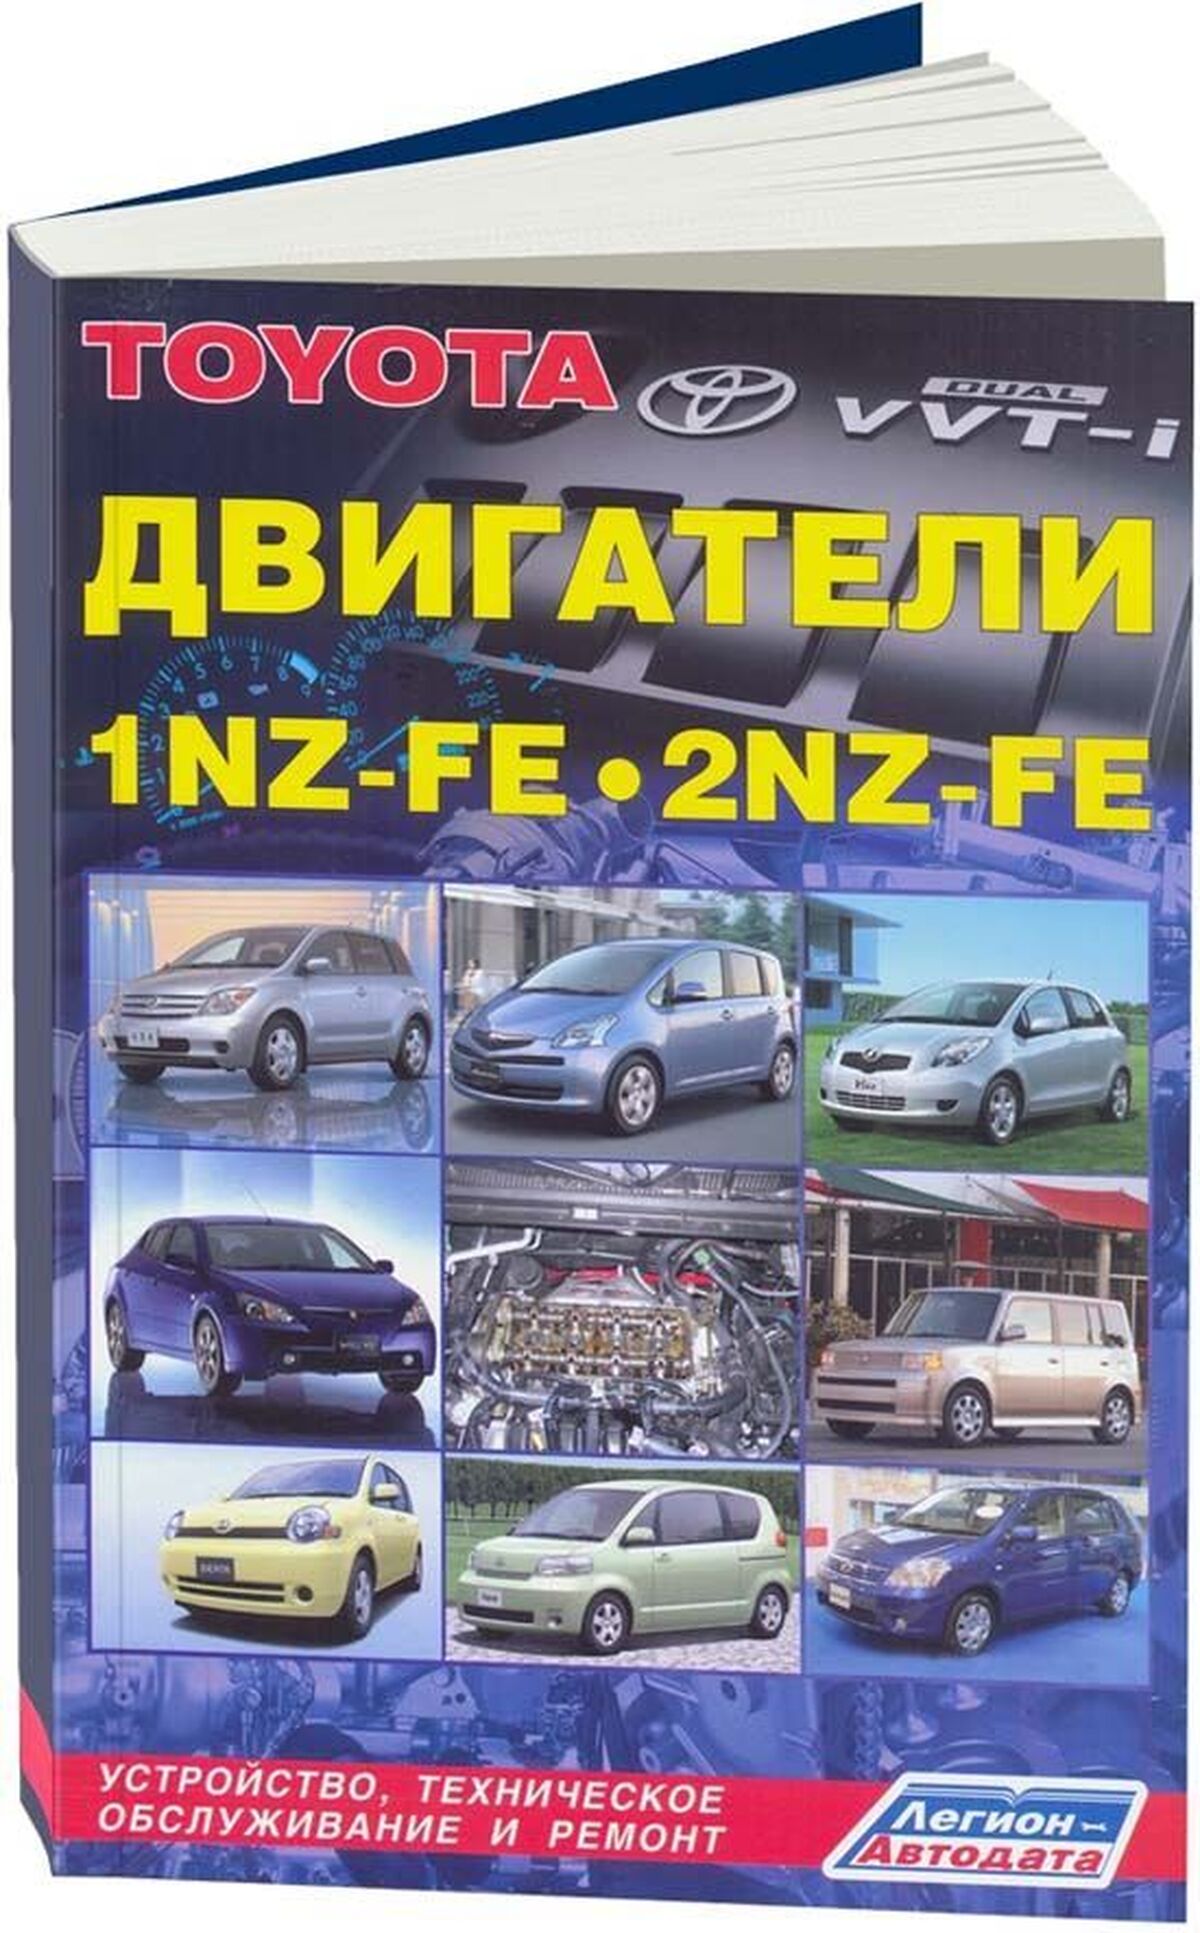 Книга: Двигатели TOYOTA 1NZ-FE / 2NZ-FE рем., то | Легион-Aвтодата